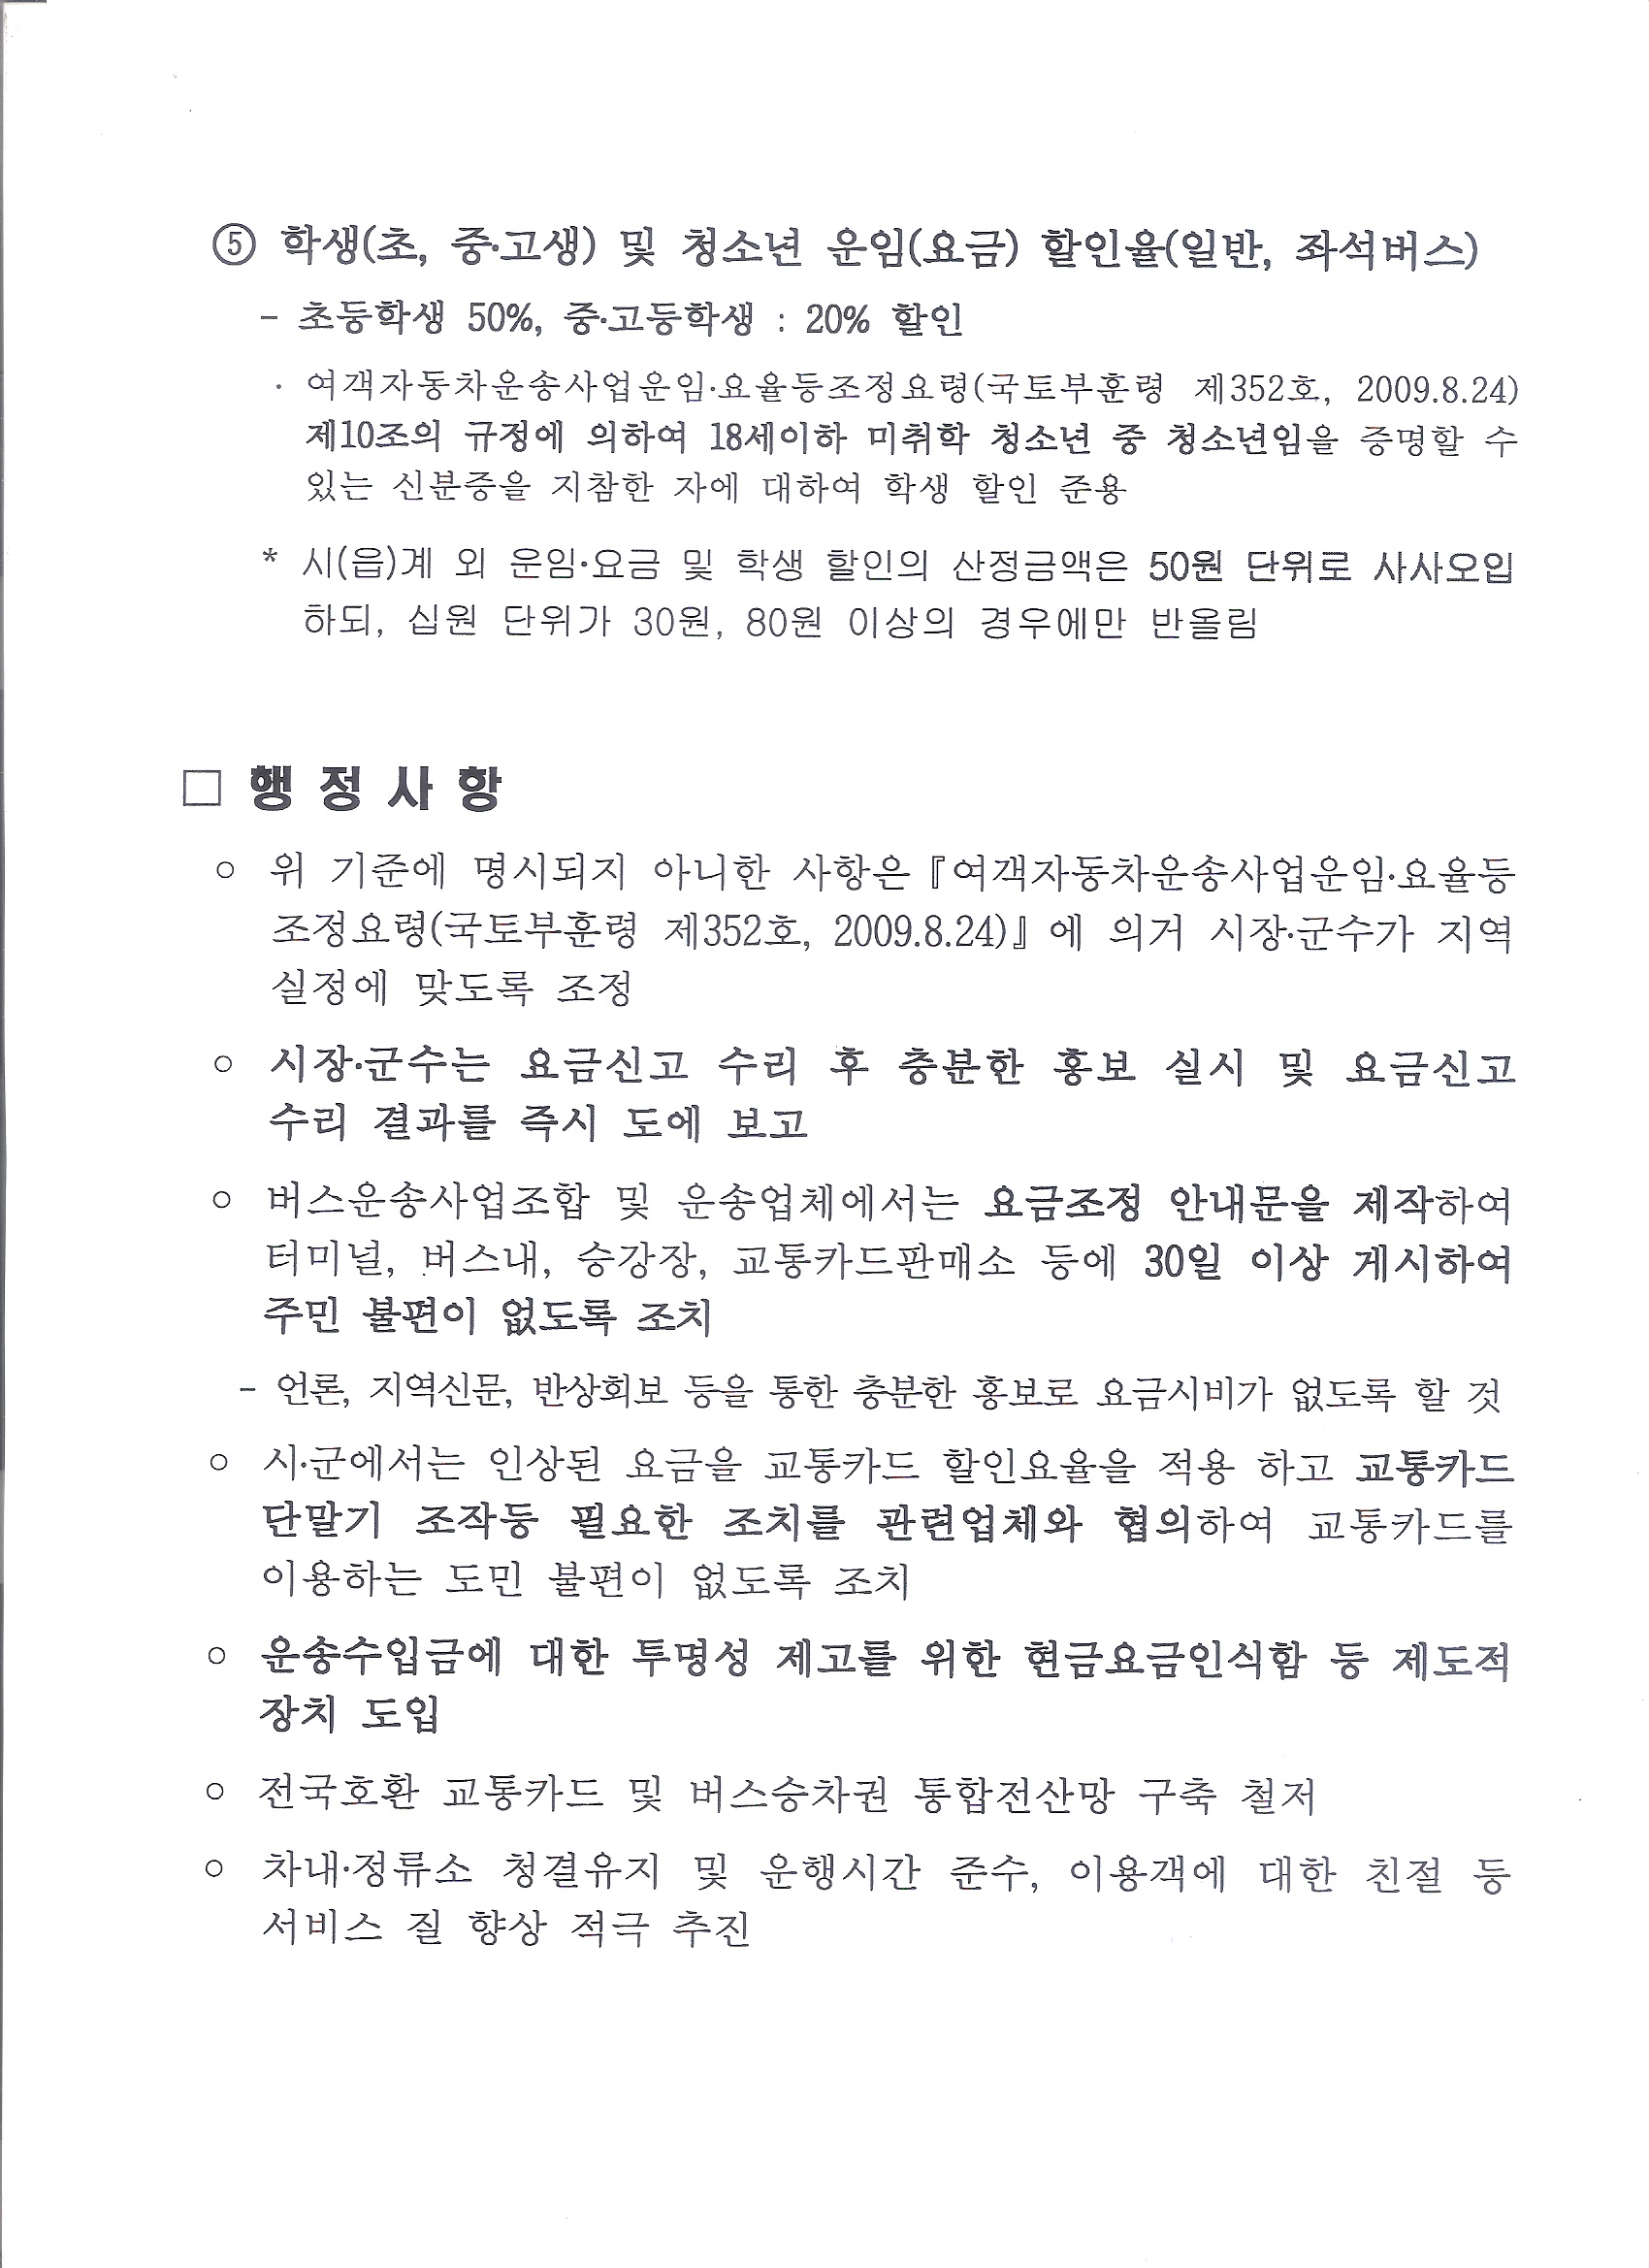 버스요금_전라북도 대중교통과-2551(2014.1.29)호 4.jpg